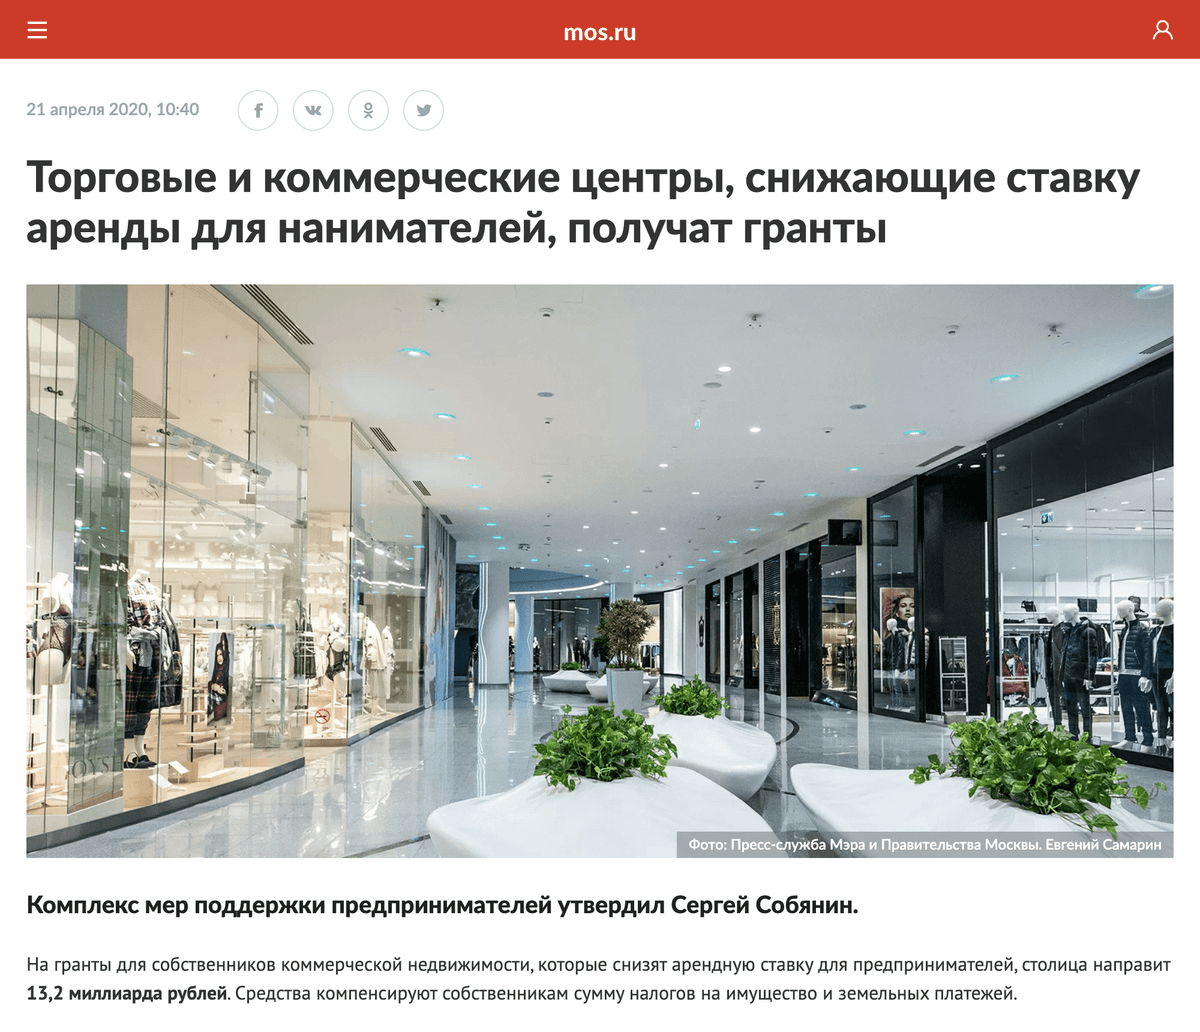 Правительство Москвы выделило 13,2 млрд рублей на поддержку тех арендодателей, которые снизят платежи для&nbsp;пострадавших от пандемии арендаторов